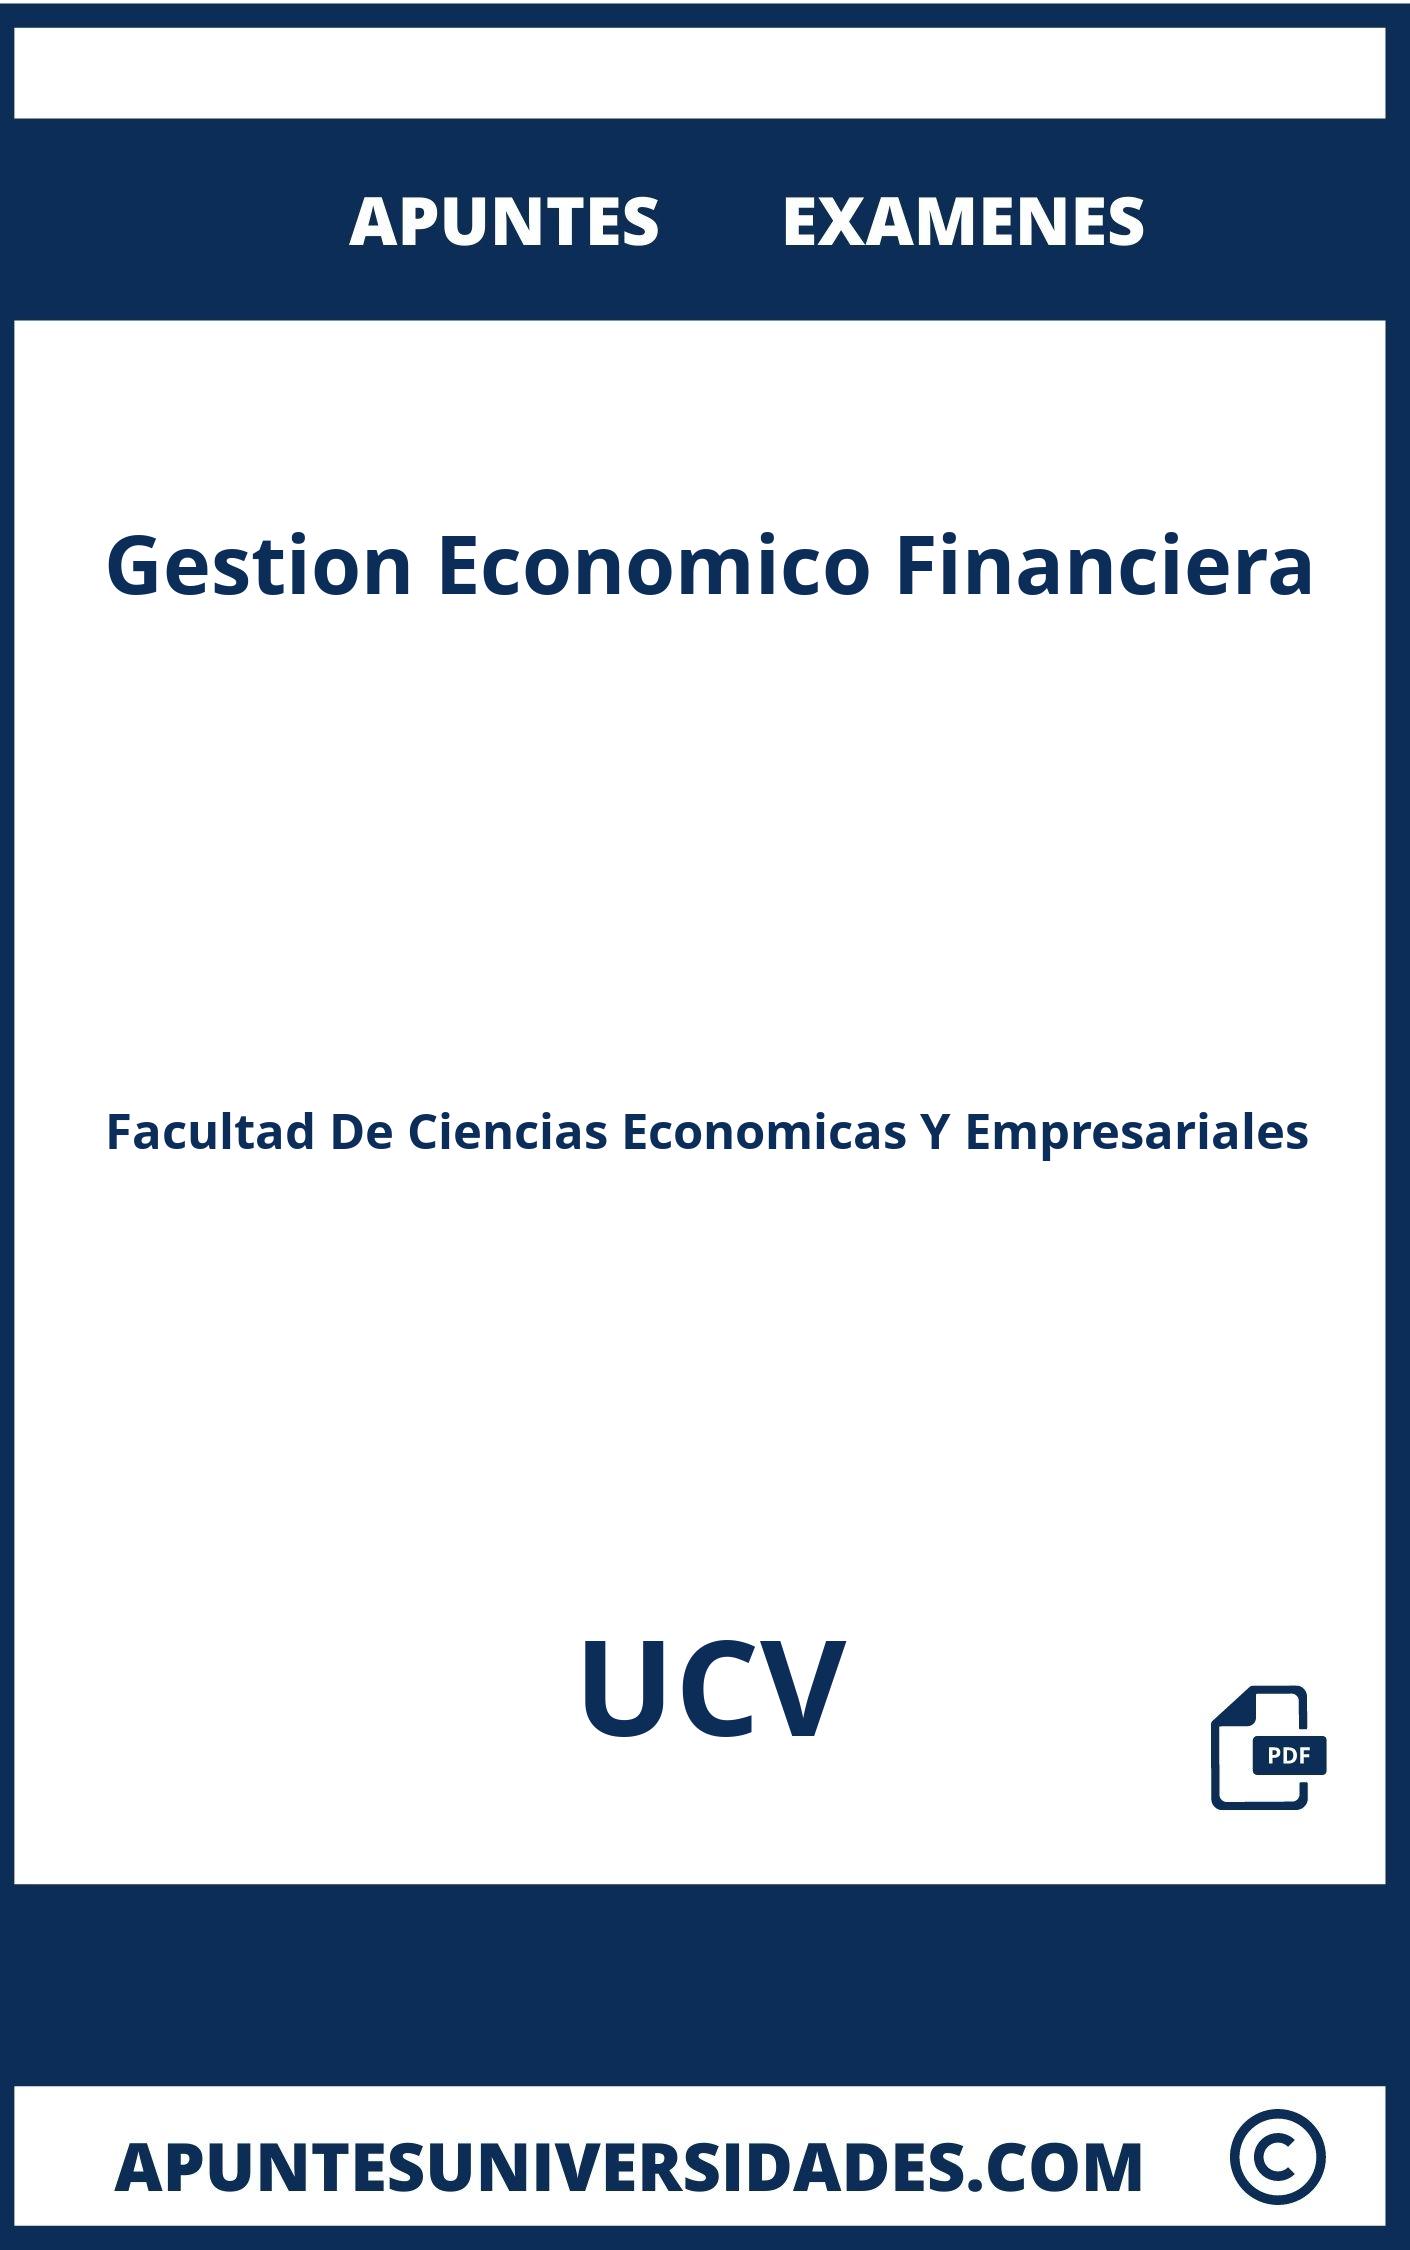 Examenes y Apuntes de Gestion Economico Financiera UCV